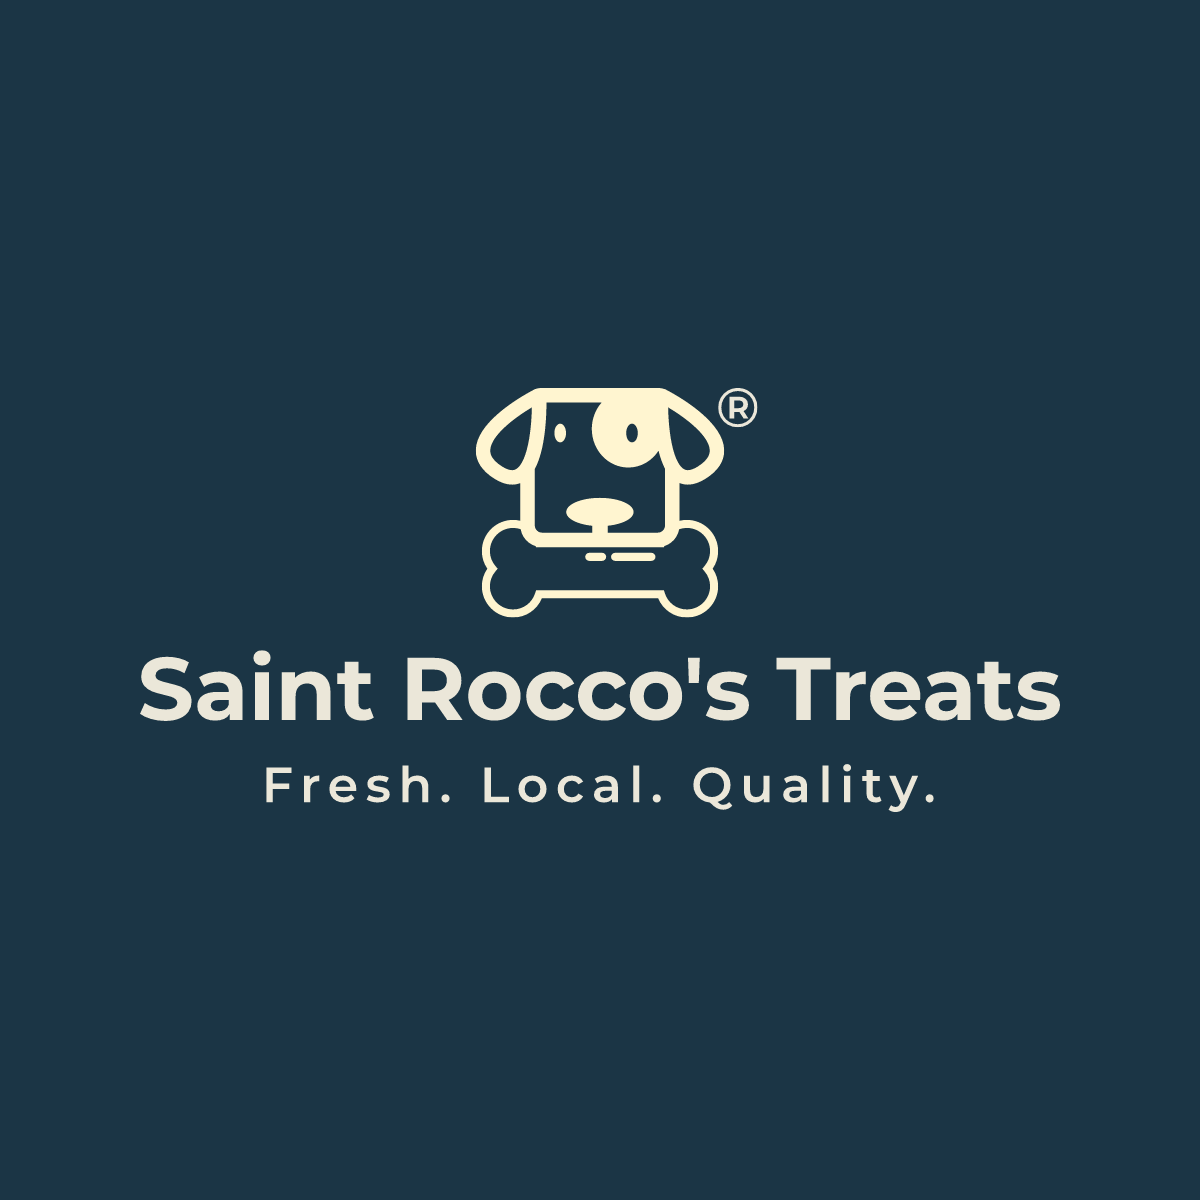 Saint Rocco's Treats logo